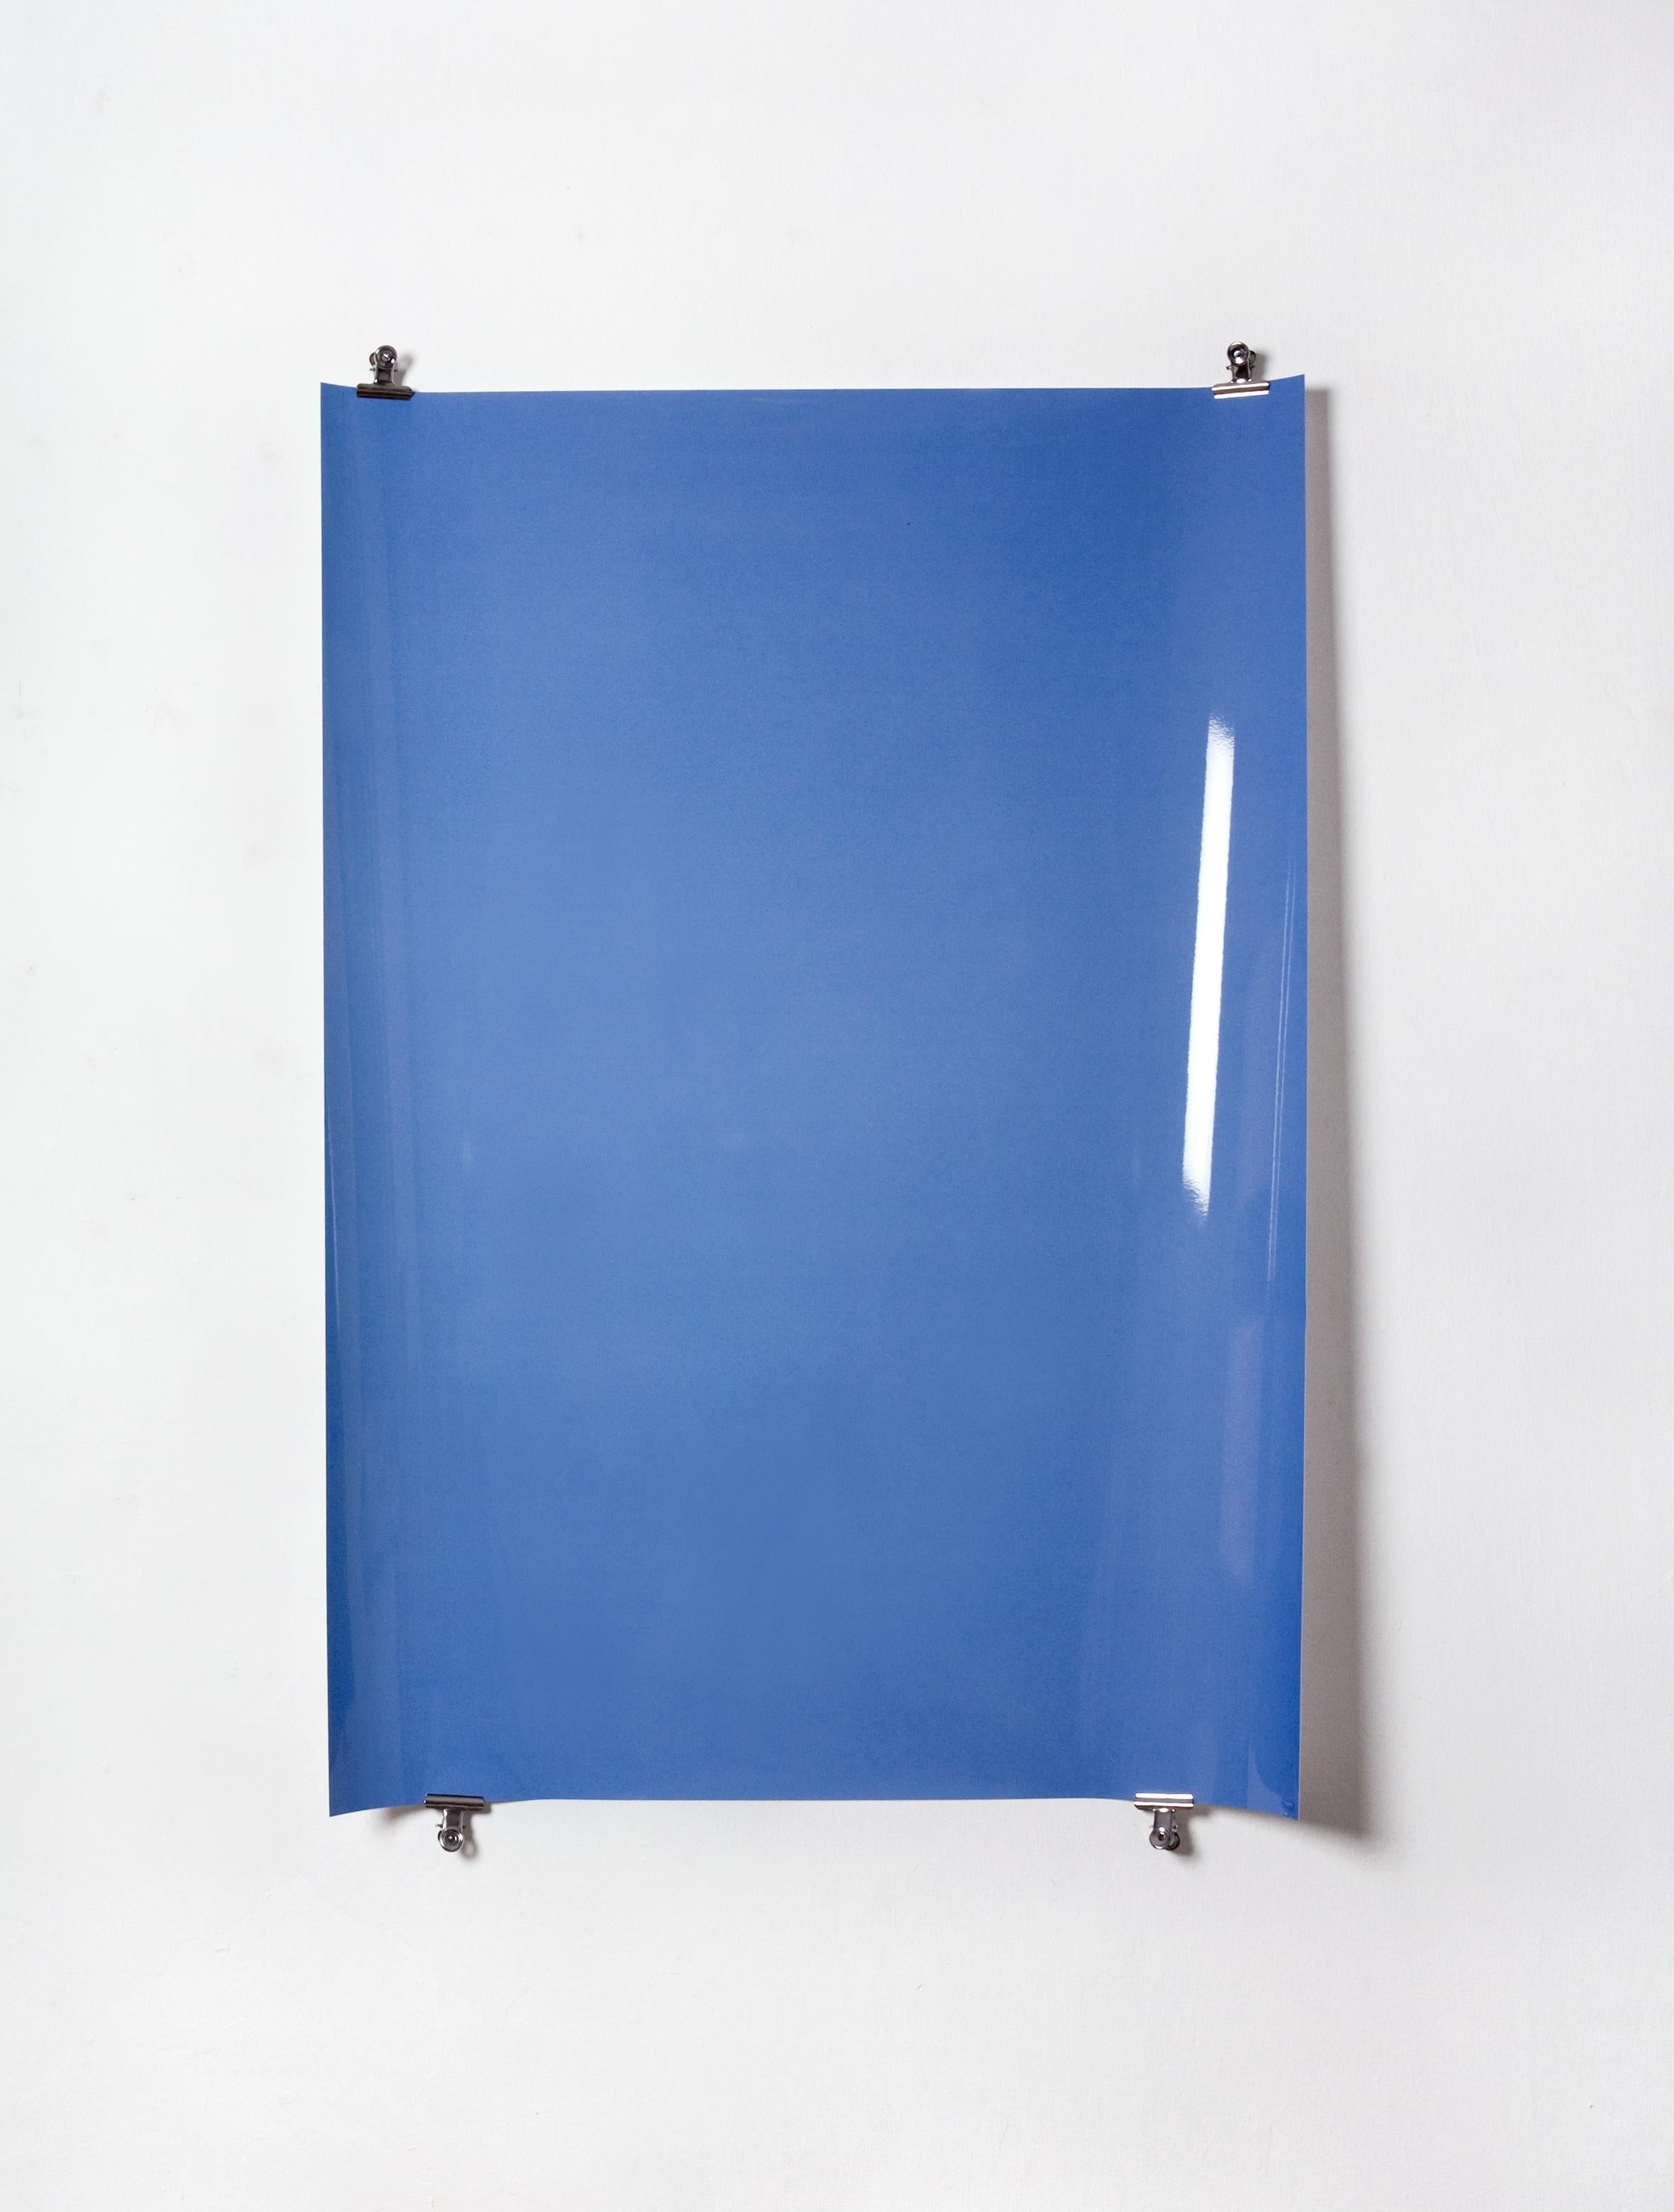 Ombres sur papier, n° 4 - Photographie abstraite contemporaine en camaïeu de bleus - Bleu Abstract Photograph par Ulrike Königshofer